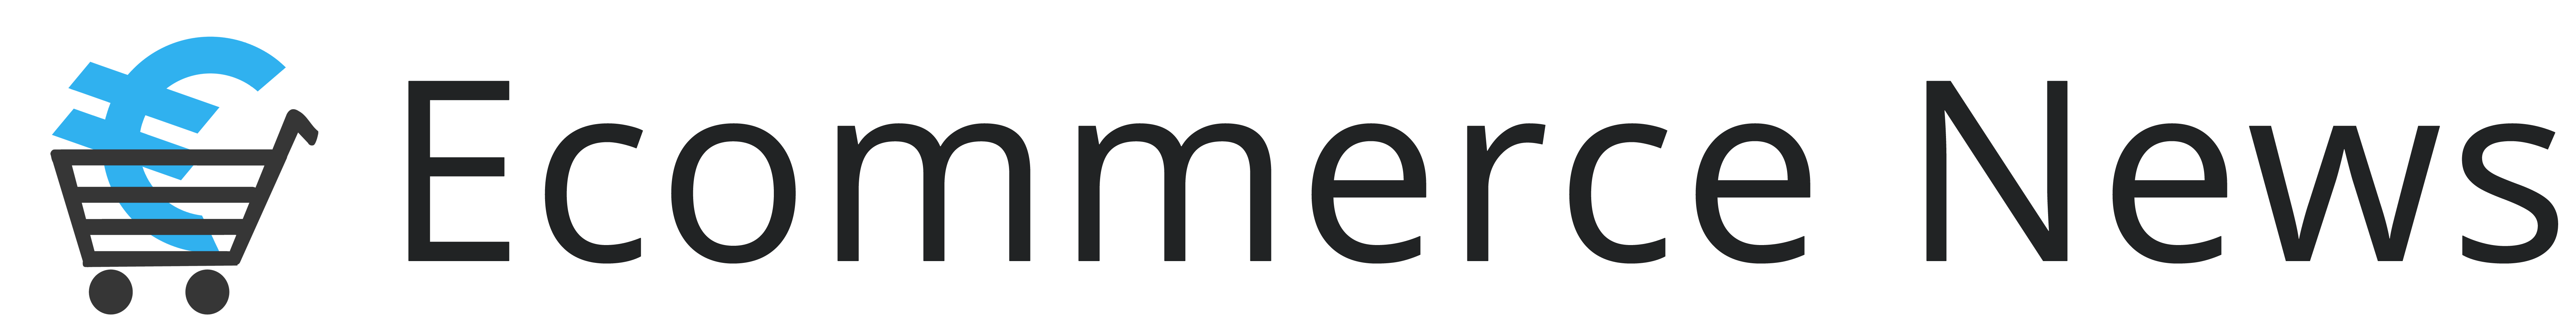 Ecommerce News Europe